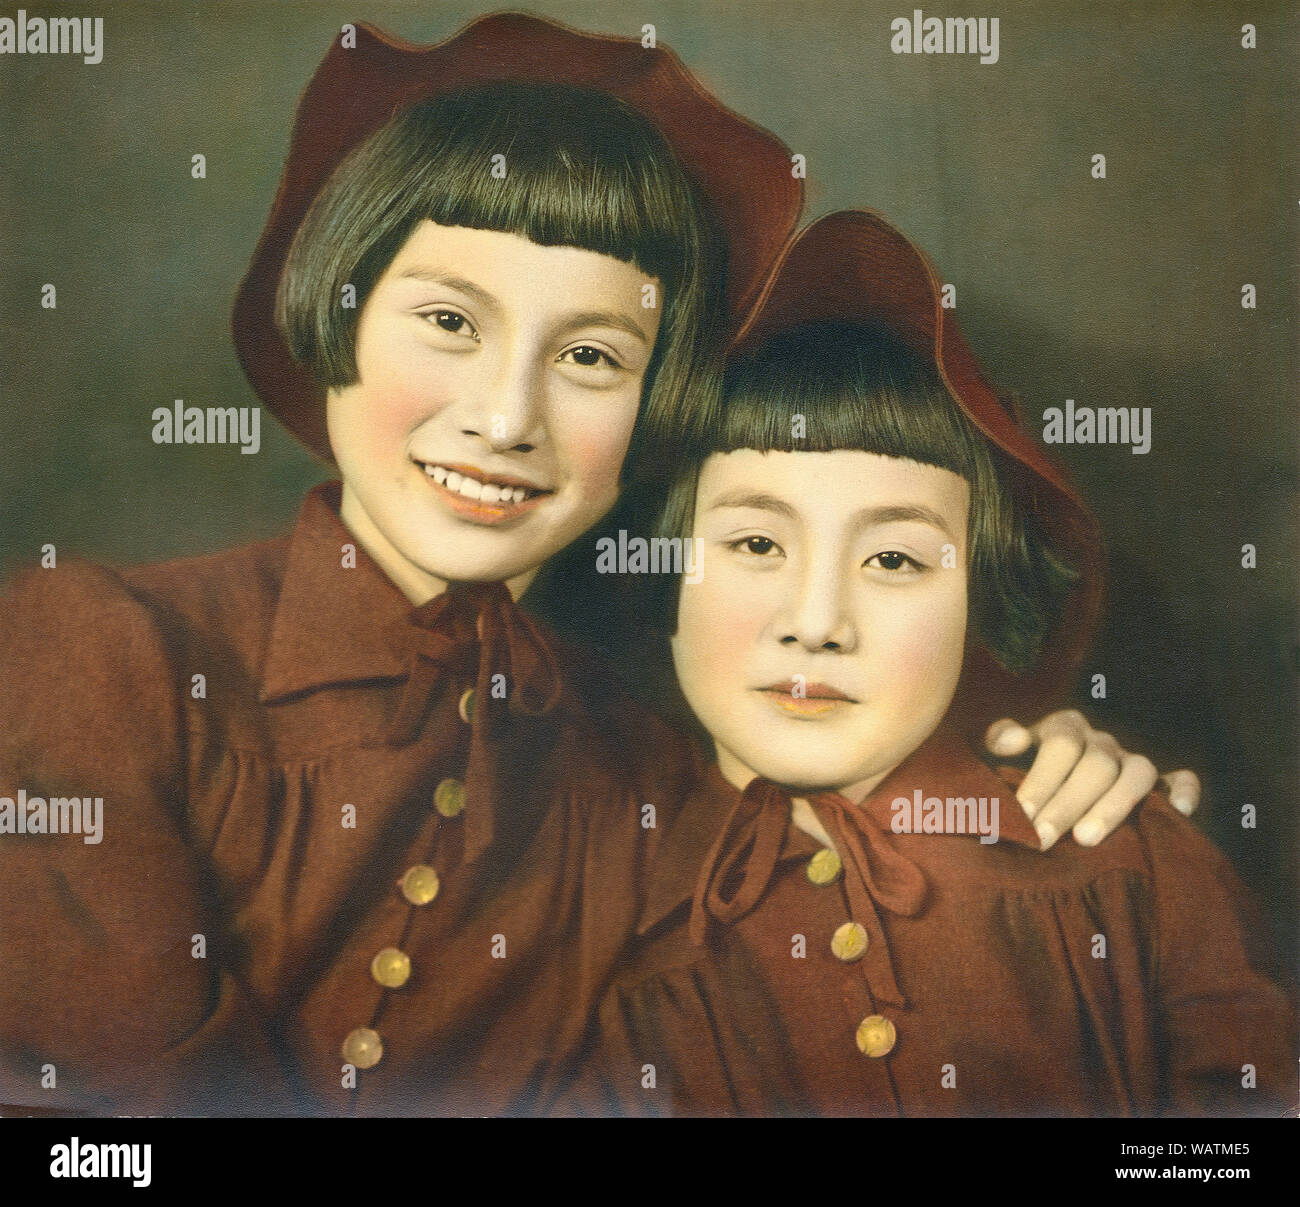 [1940 Japan - Zwei japanische Schwestern] - zwei Schwestern. Hand getönte Fotografie der späten 1930er Jahre aus dem Hanaya Kanbei Studio in Ashiya, Hyogo Präfektur. Die Mädchen sind wirklich dieses berühmten Fotografen Töchter. Stockfoto